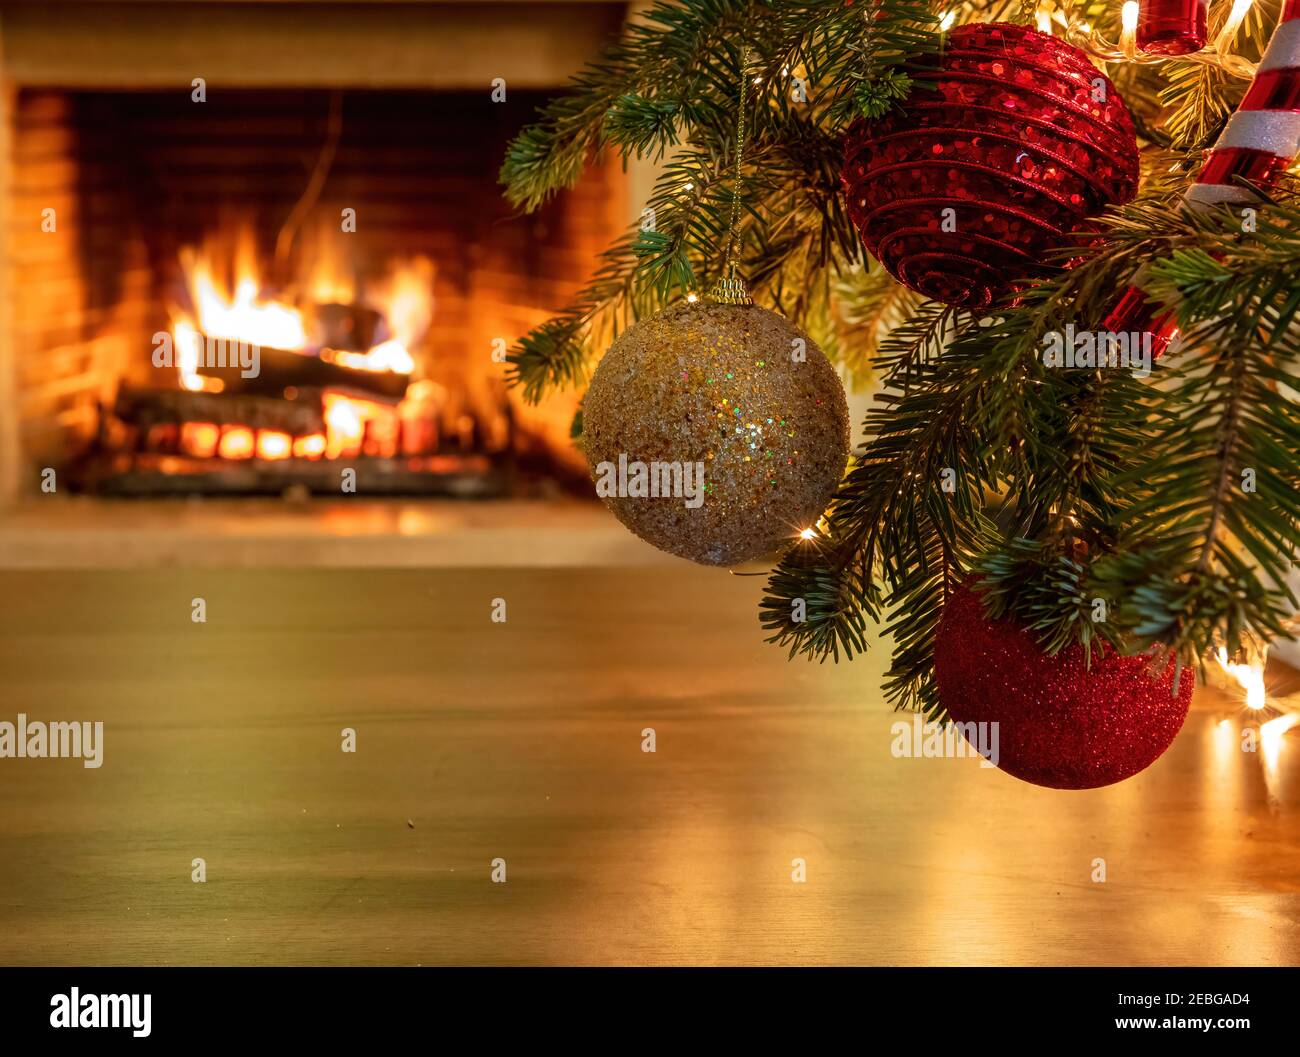 Cành cây thông Giáng Sinh với bóng đèn tạo hiệu ứng phản chiếu sẽ mang lại cho bạn một không gian Giáng Sinh ấm cúng. Với vẻ đẹp thiên nhiên và hơi thở của bầu không khí Giáng Sinh, bạn sẽ tìm thấy một yên bình và tình cảm nhẹ nhàng trái tim.